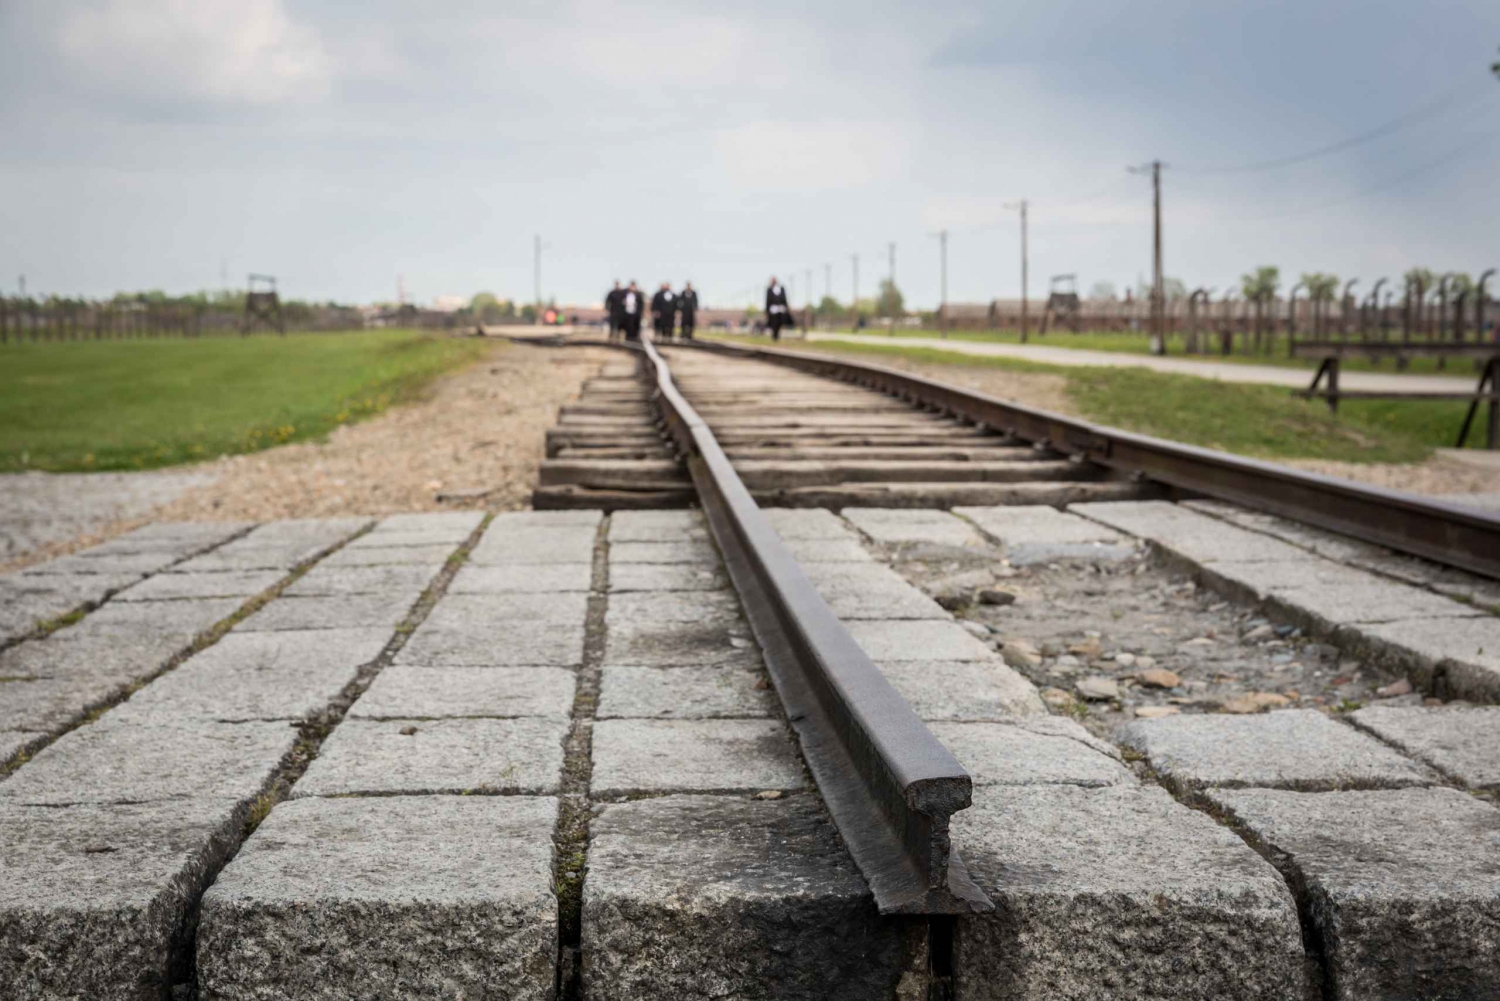 De Cracóvia: Excursão a Auschwitz Birkenau com transporte